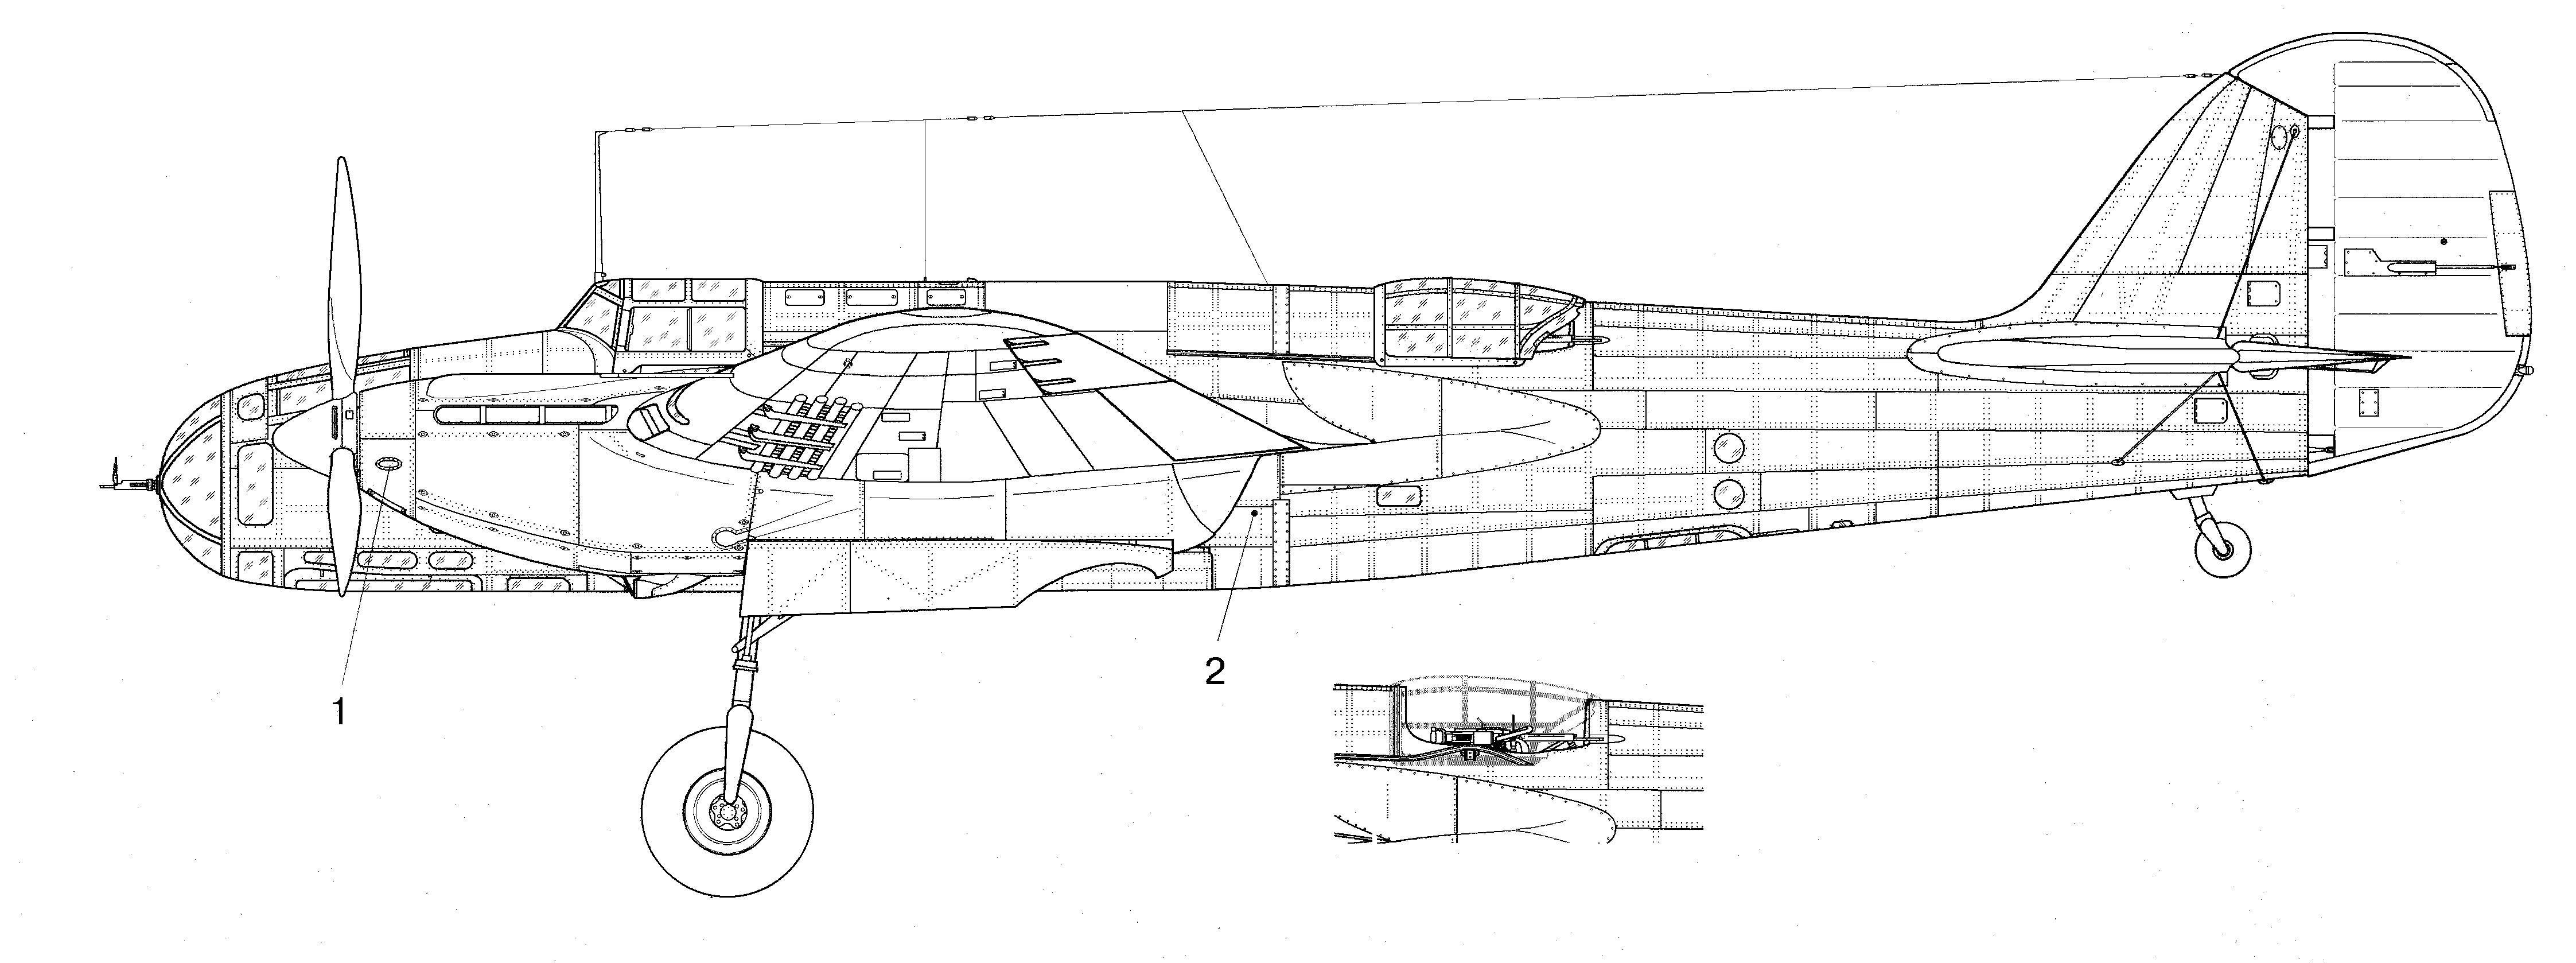 Ar-2 blueprint